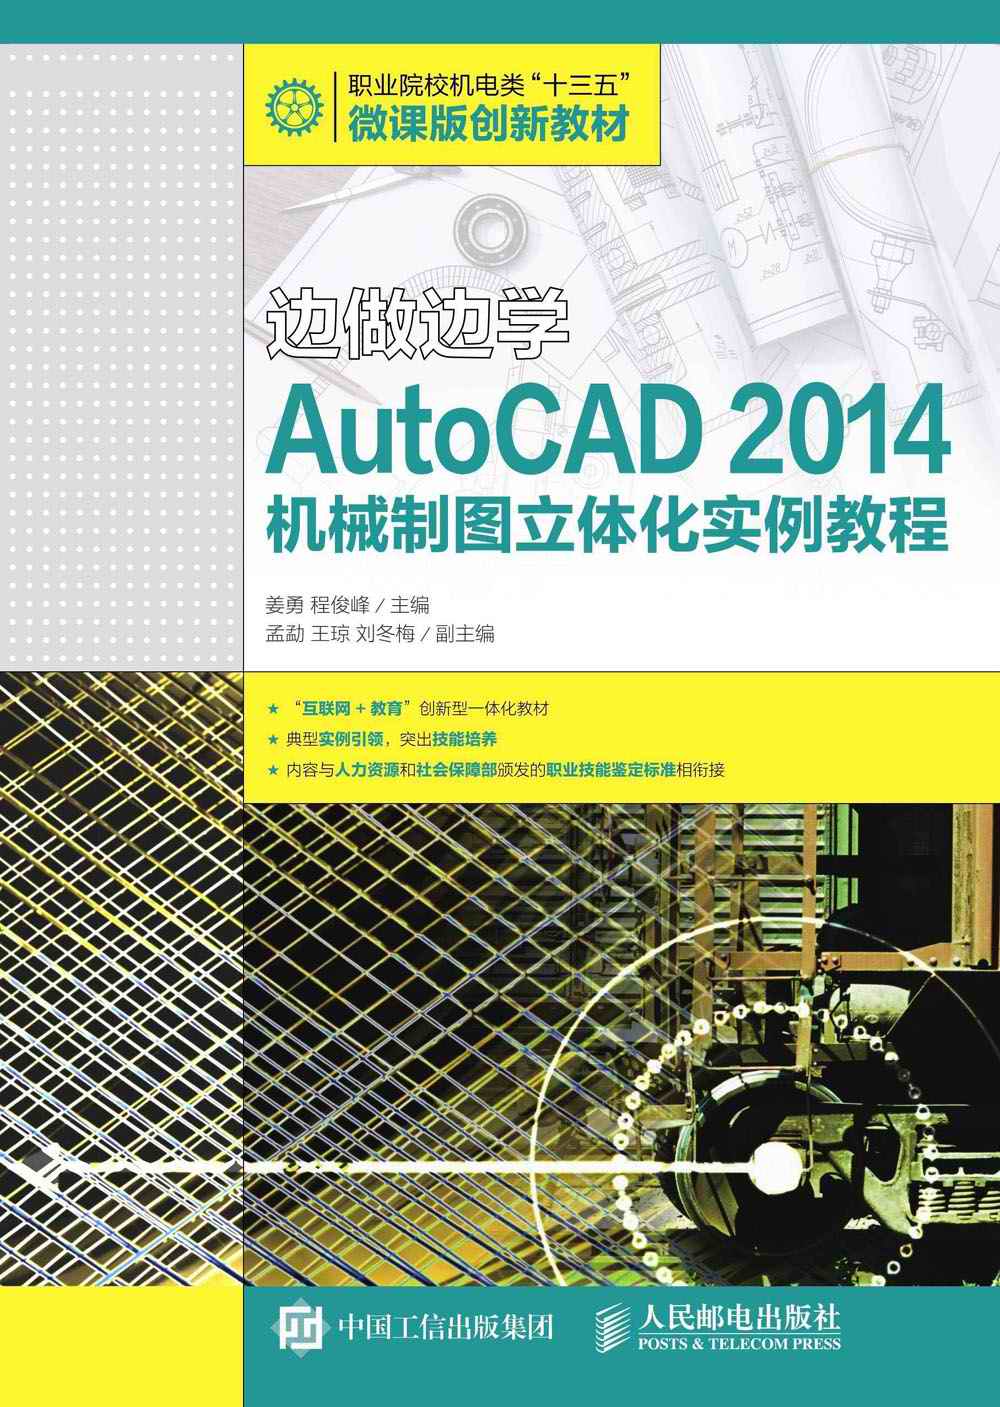 边做边学——AutoCAD 2014机械制图立体化实例教程